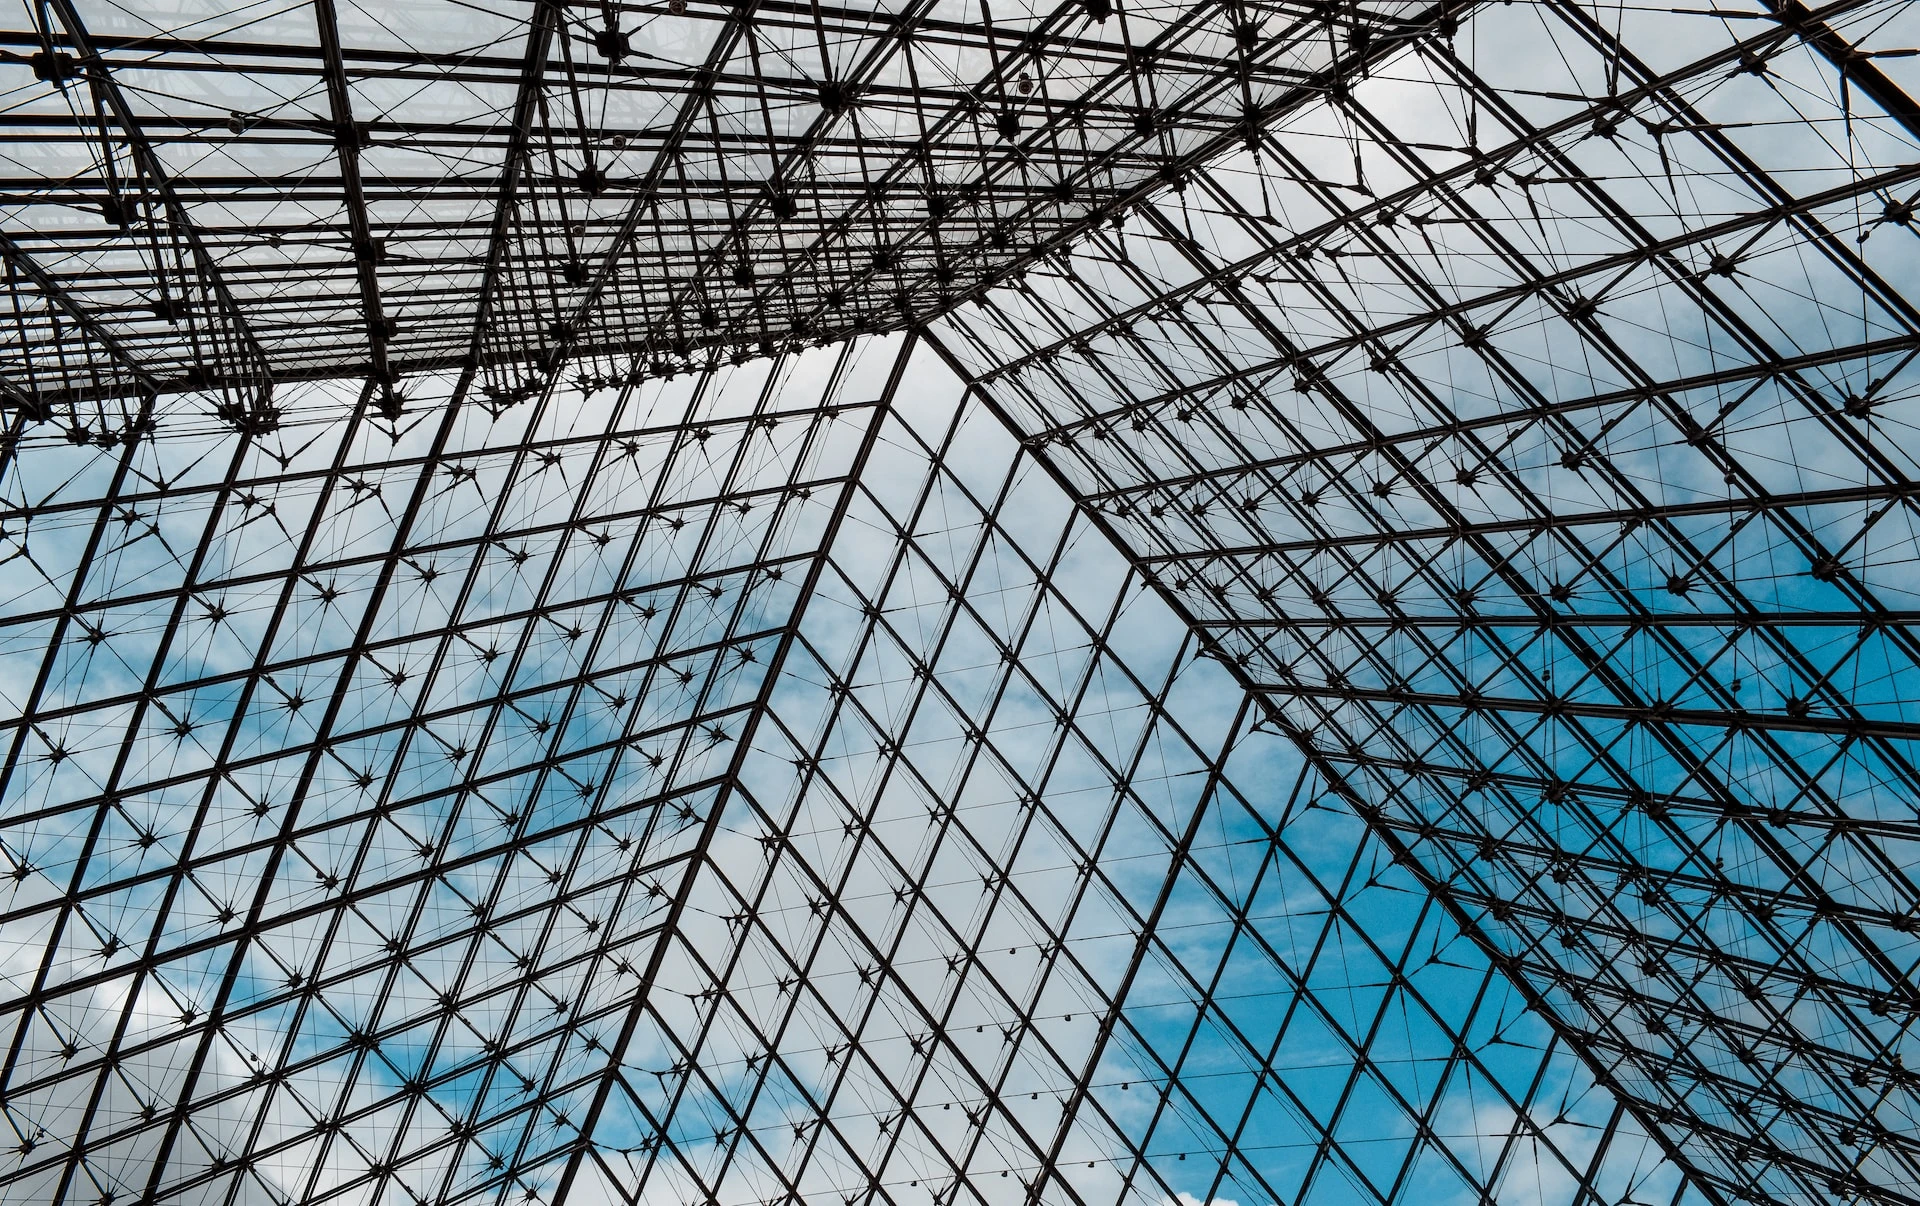 La pyramide du Louvre est l'entrée principale du Musée du Louvre / vue intérieure Photo de Myriam Olmand sur Unsplash